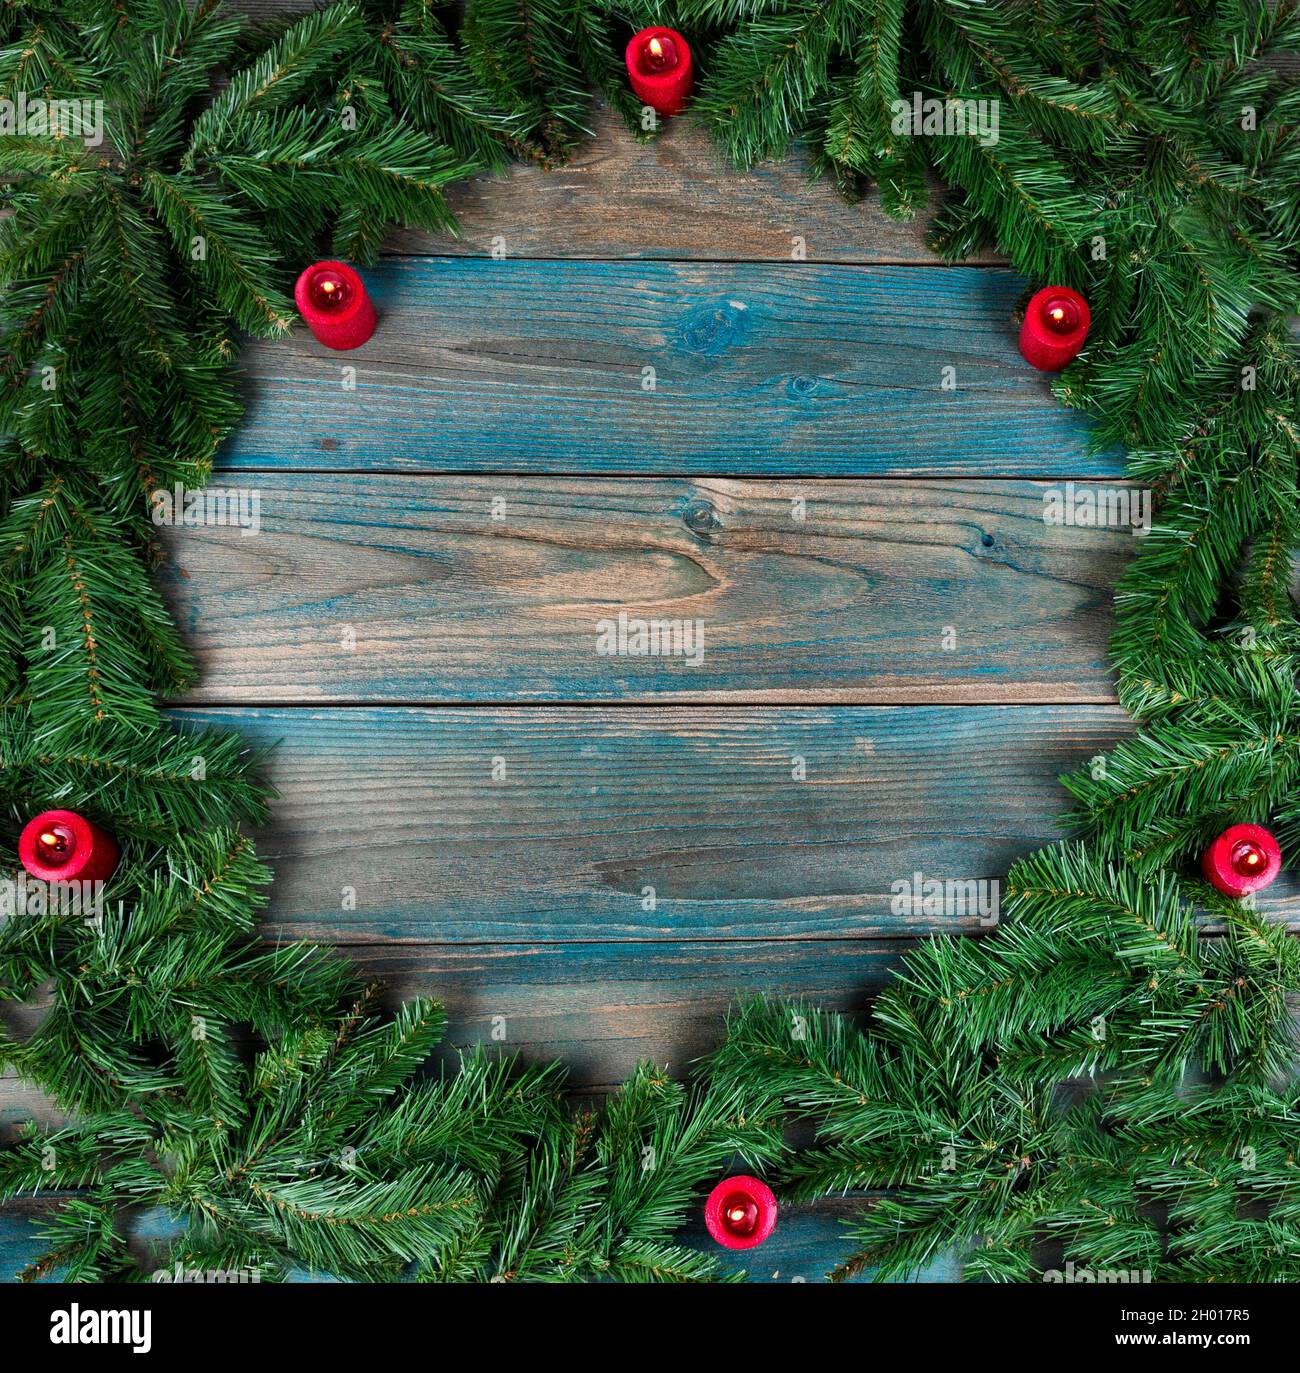 Vue en hauteur d'une couronne complète et de bougies rouges dans la bordure circulaire sur des planches de bois vieillies bleues pour les vacances d'hiver de Noël ou N Banque D'Images